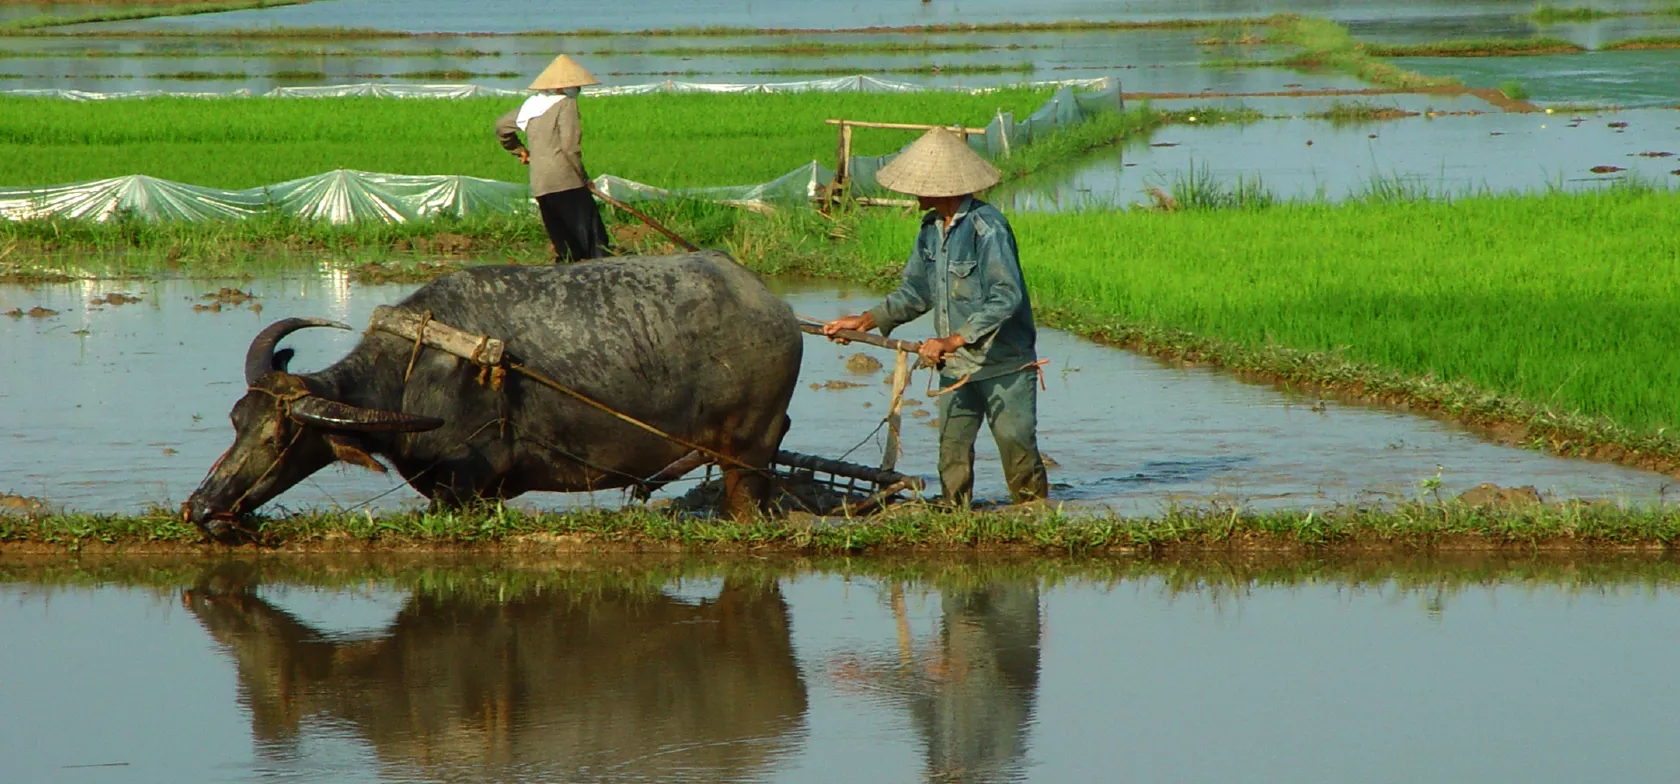 En vietnamesisk landmand bruger kvæg til at trække sin plov, oplev dette ved en rejse til Vietnam.